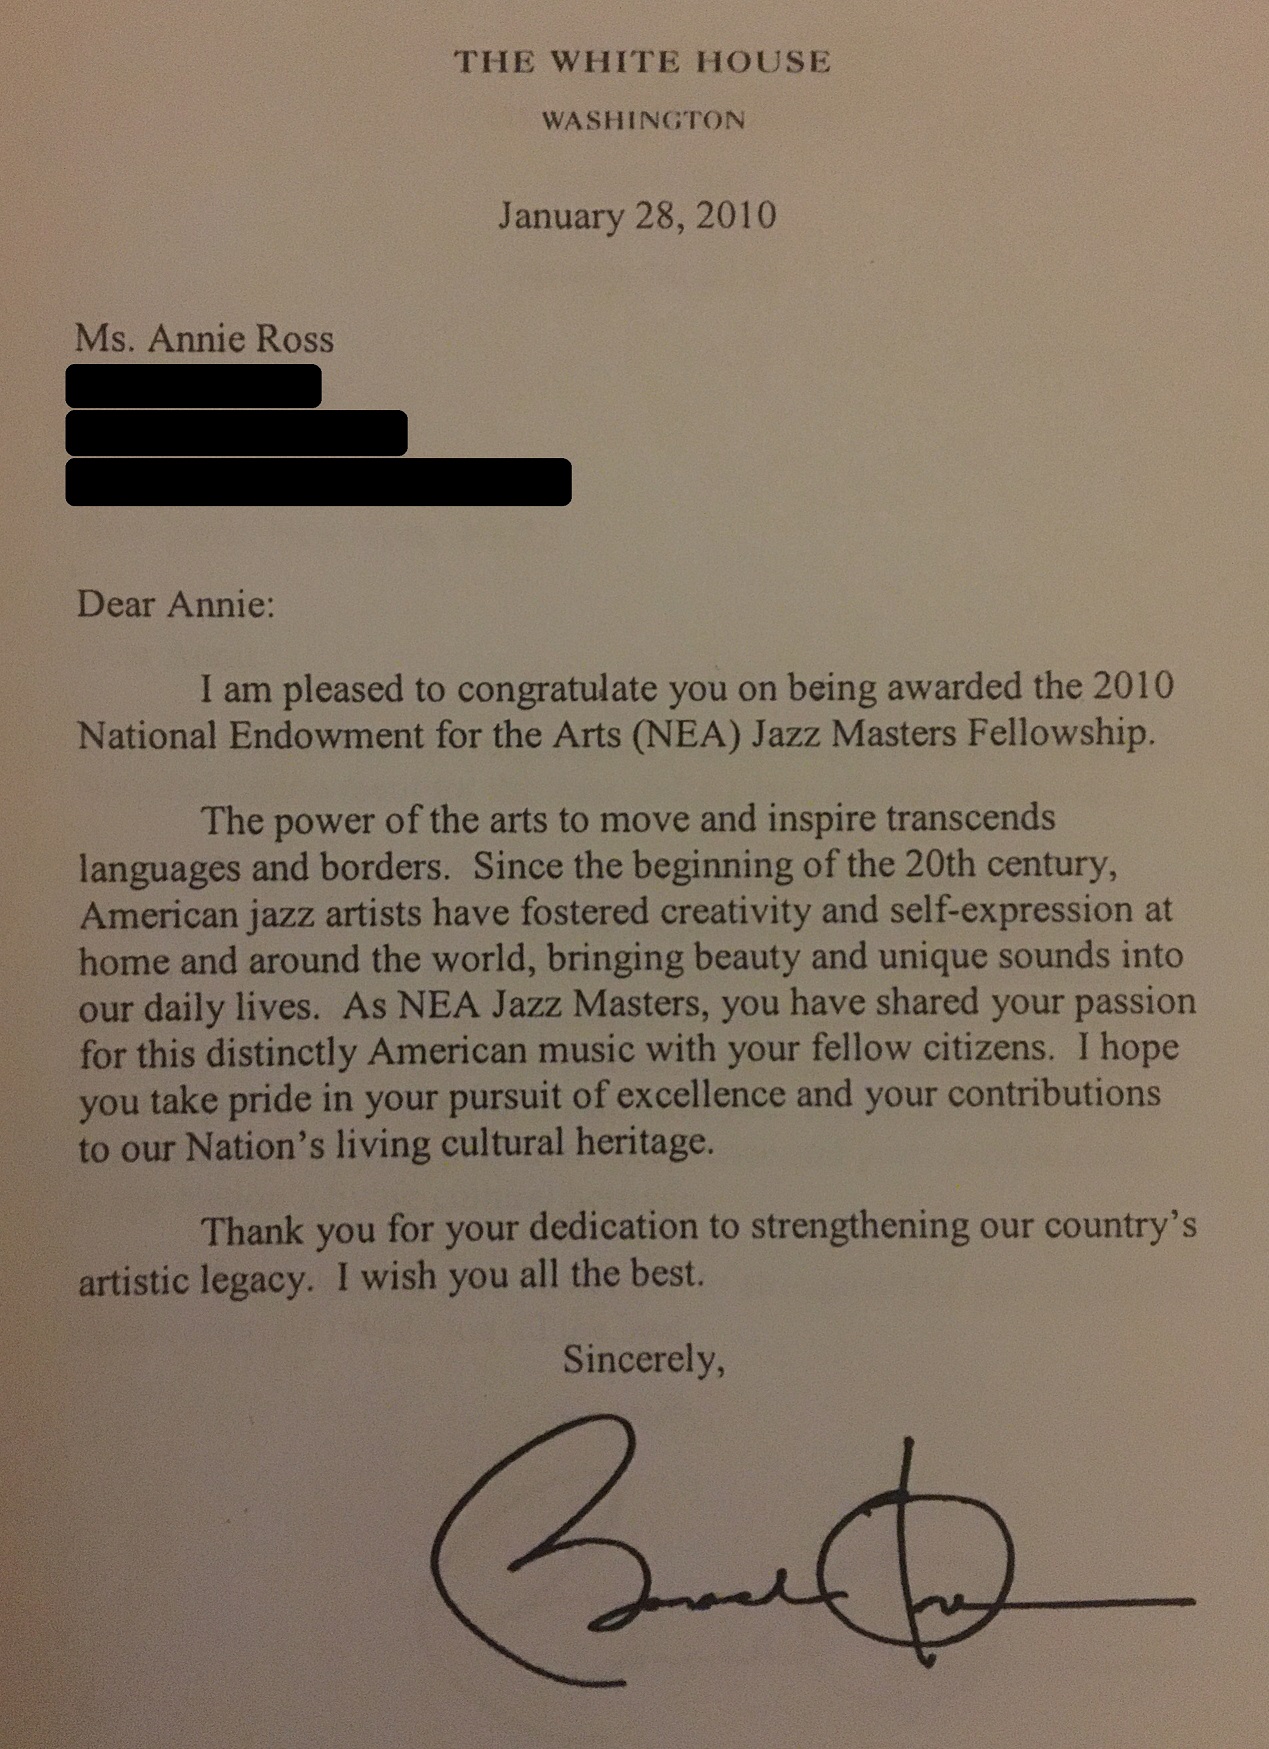 Letter from President Barack Obama